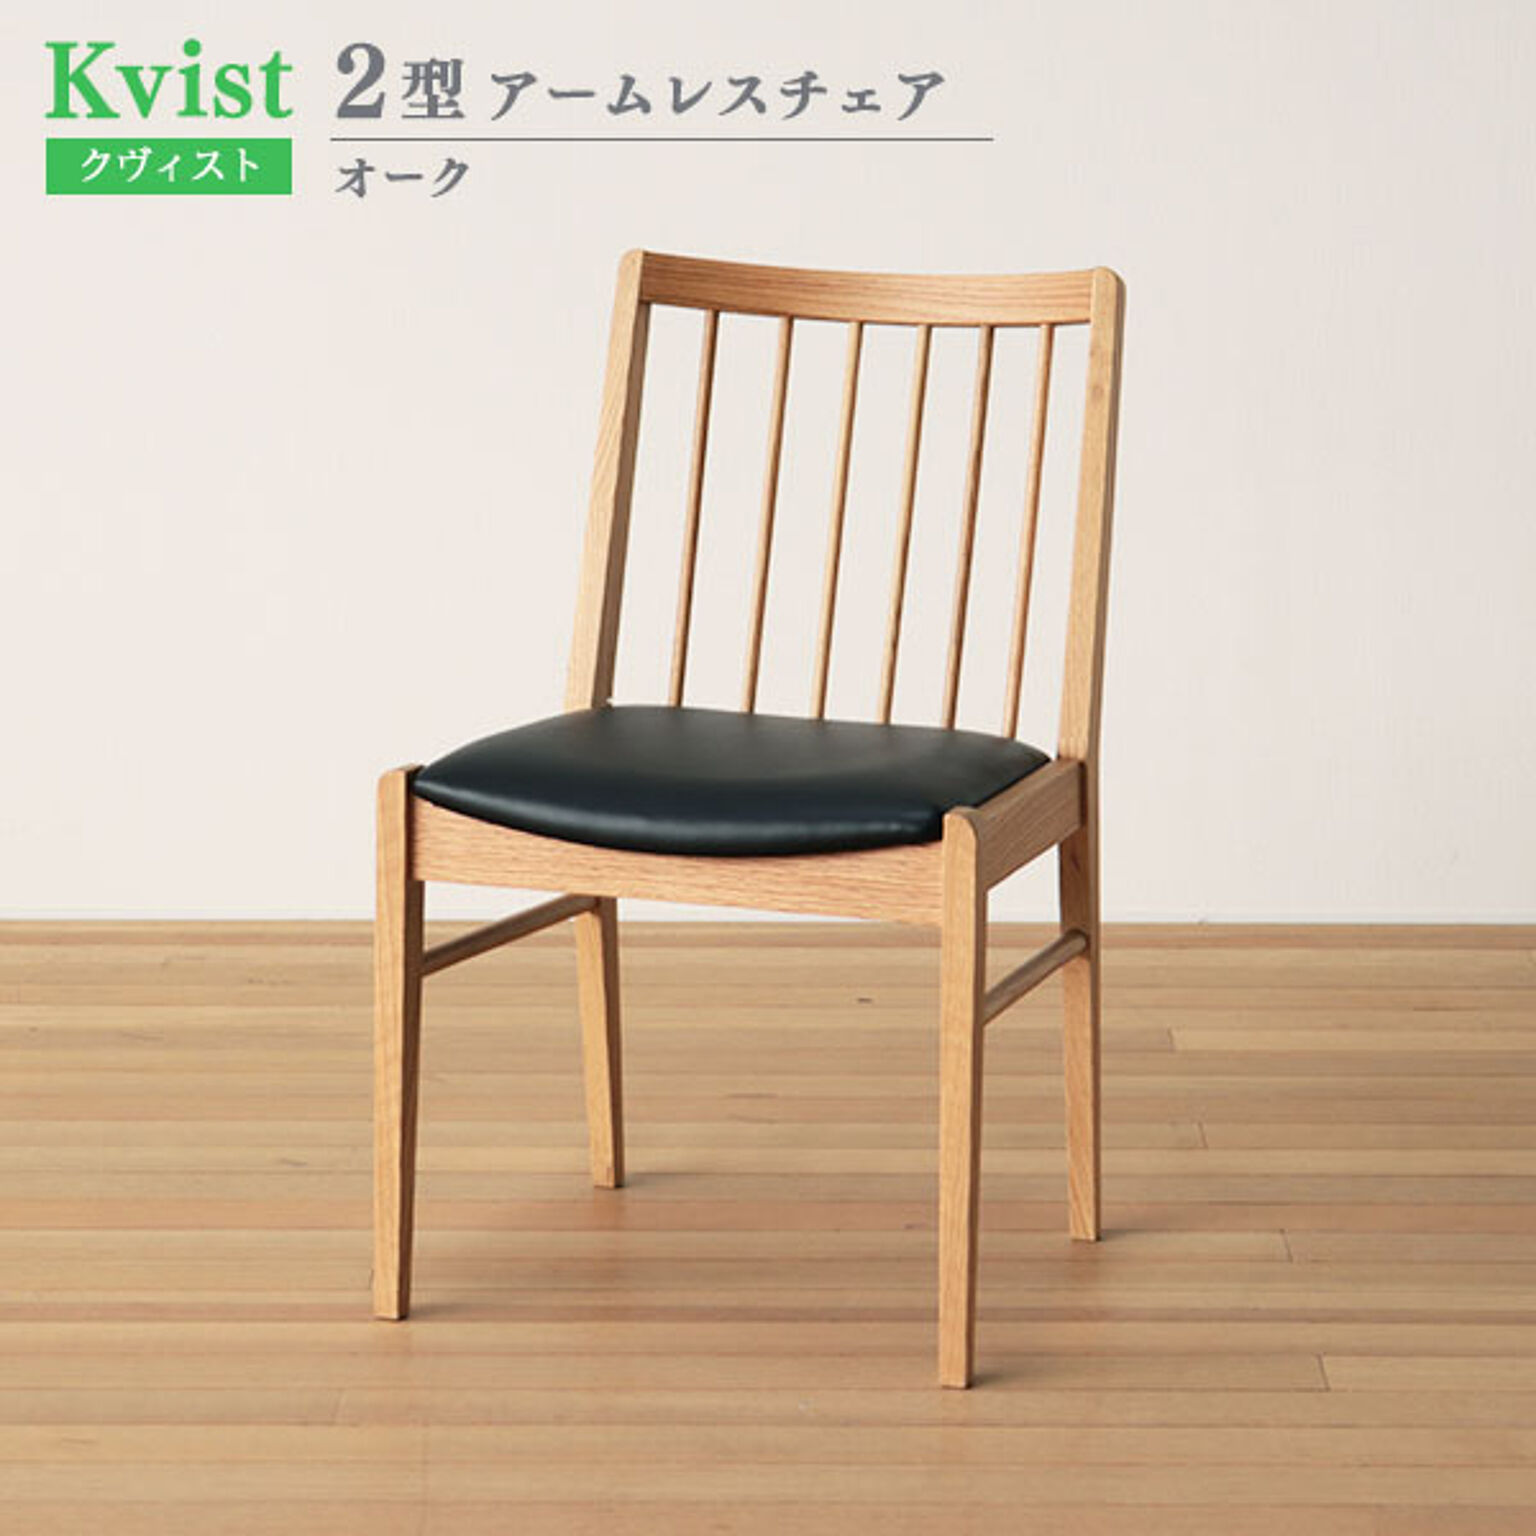 ダイニングチェア 2型 47.7cm幅 オーク材 木製 アームレスチェア 食卓椅子 イス ウッドチェア ダイニング椅子 クヴィスト Kvist